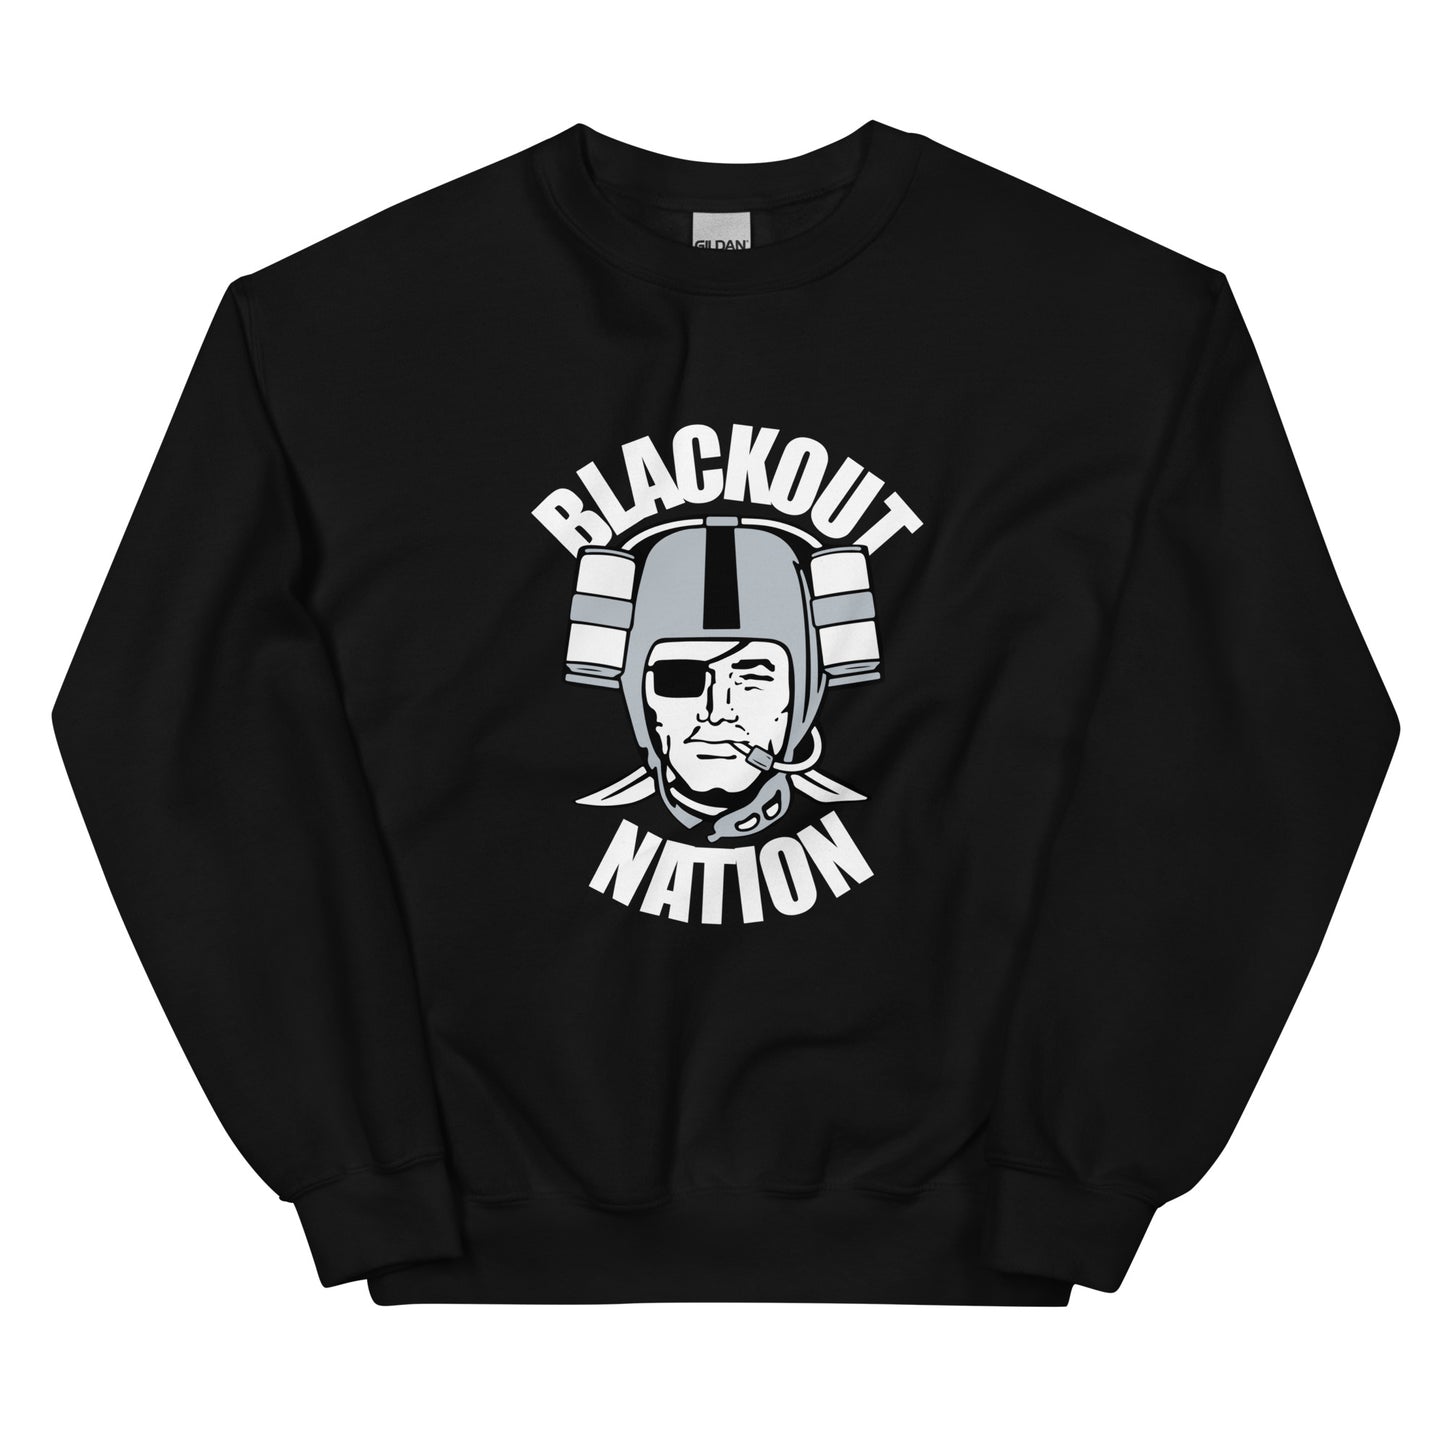 Blackout Nation II Sweatshirt